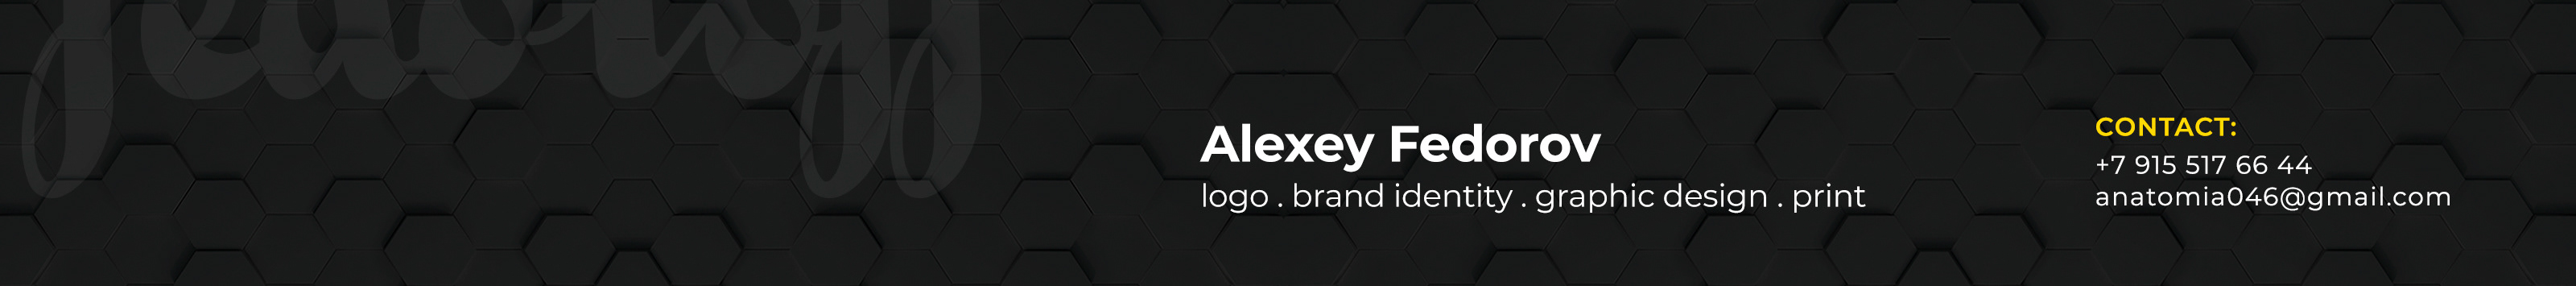 ALEXEY FEDOROV profil başlığı